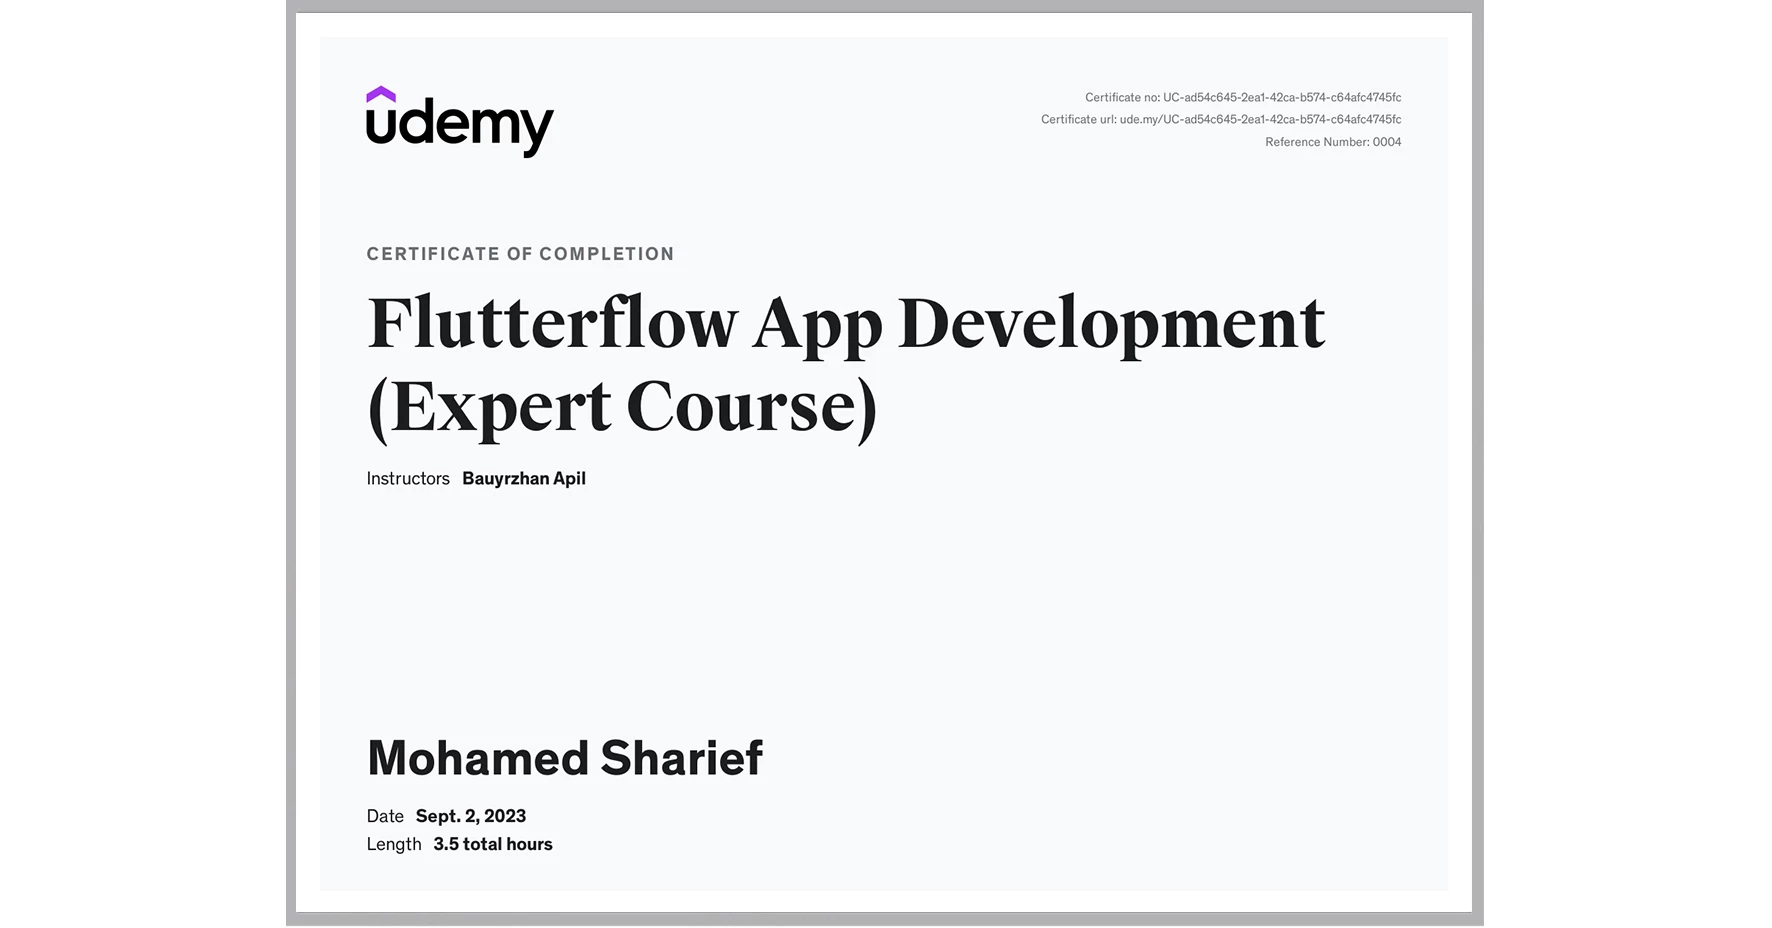 MohamedSharief's FlutterFlow Certificate